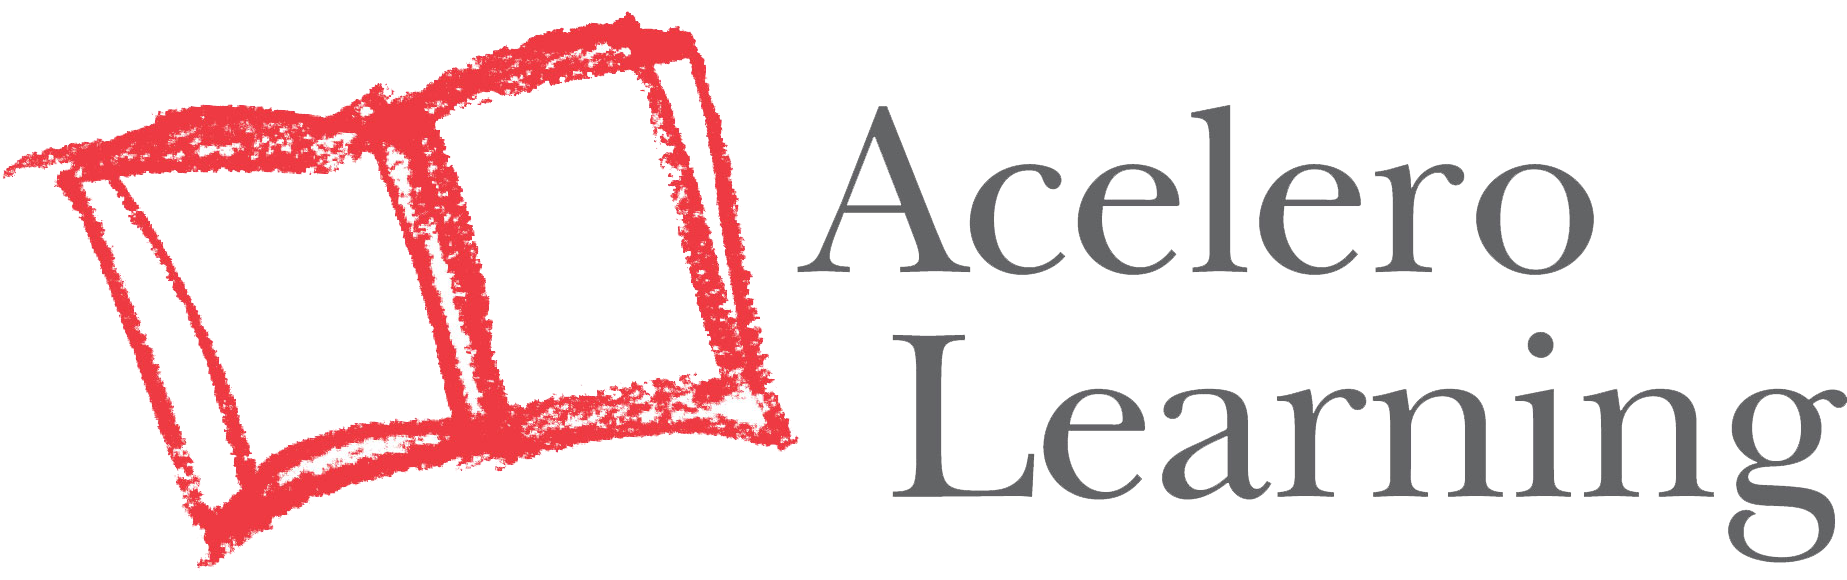 acelero learning logo.png